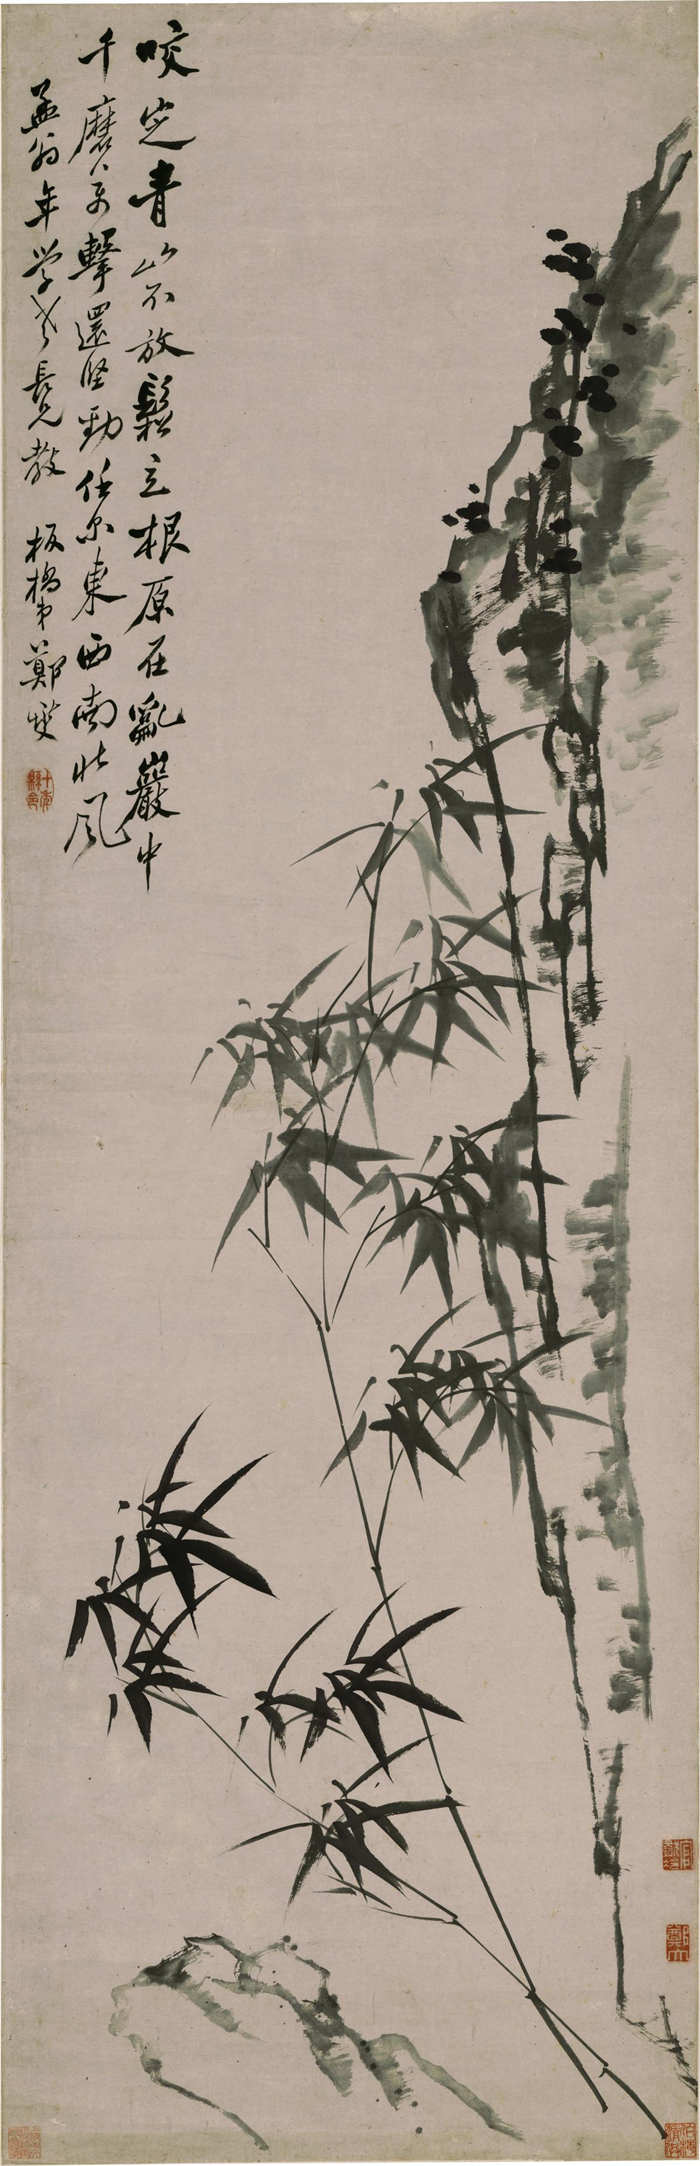 清 郑燮-《竹石图轴》作品高清下载